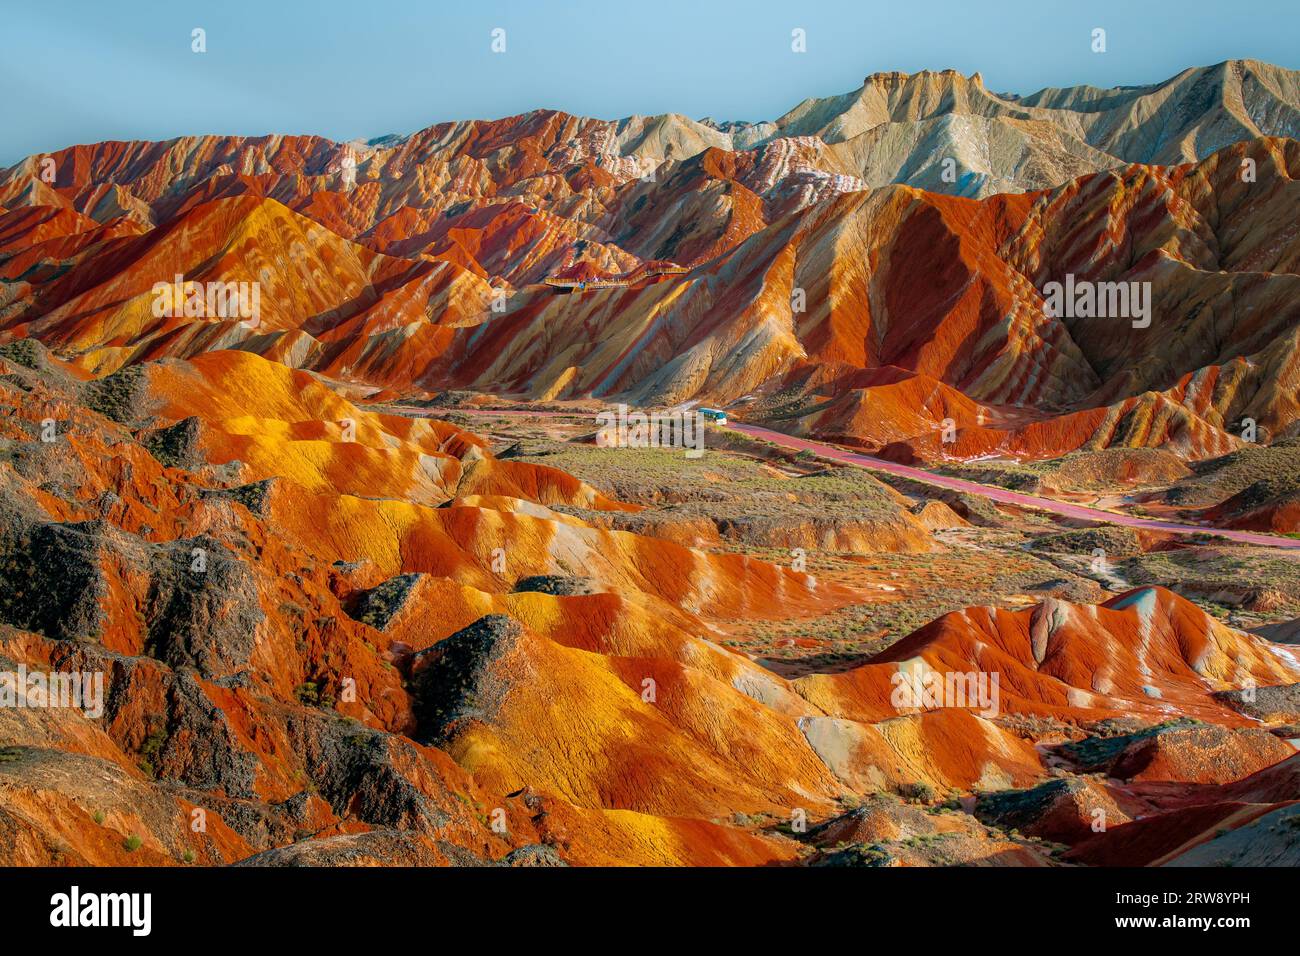 Panorama des Regenbogenberges im Geologischen Park Zhangye Danxia in China. Verschiedene Farben der Felsen, Hintergrundbild Stockfoto